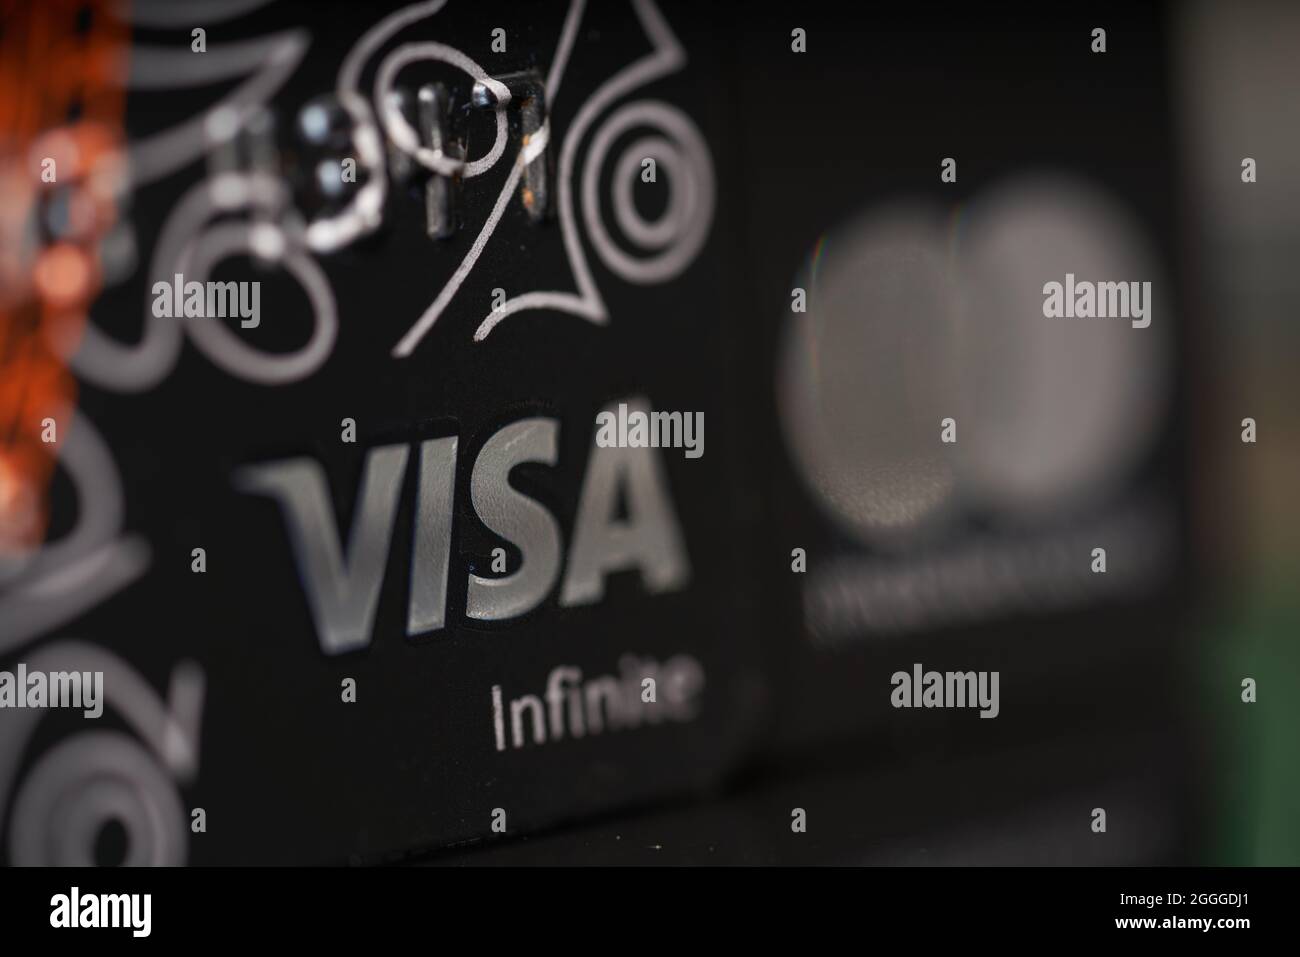 Visa infinite bank credit card Stock Photo